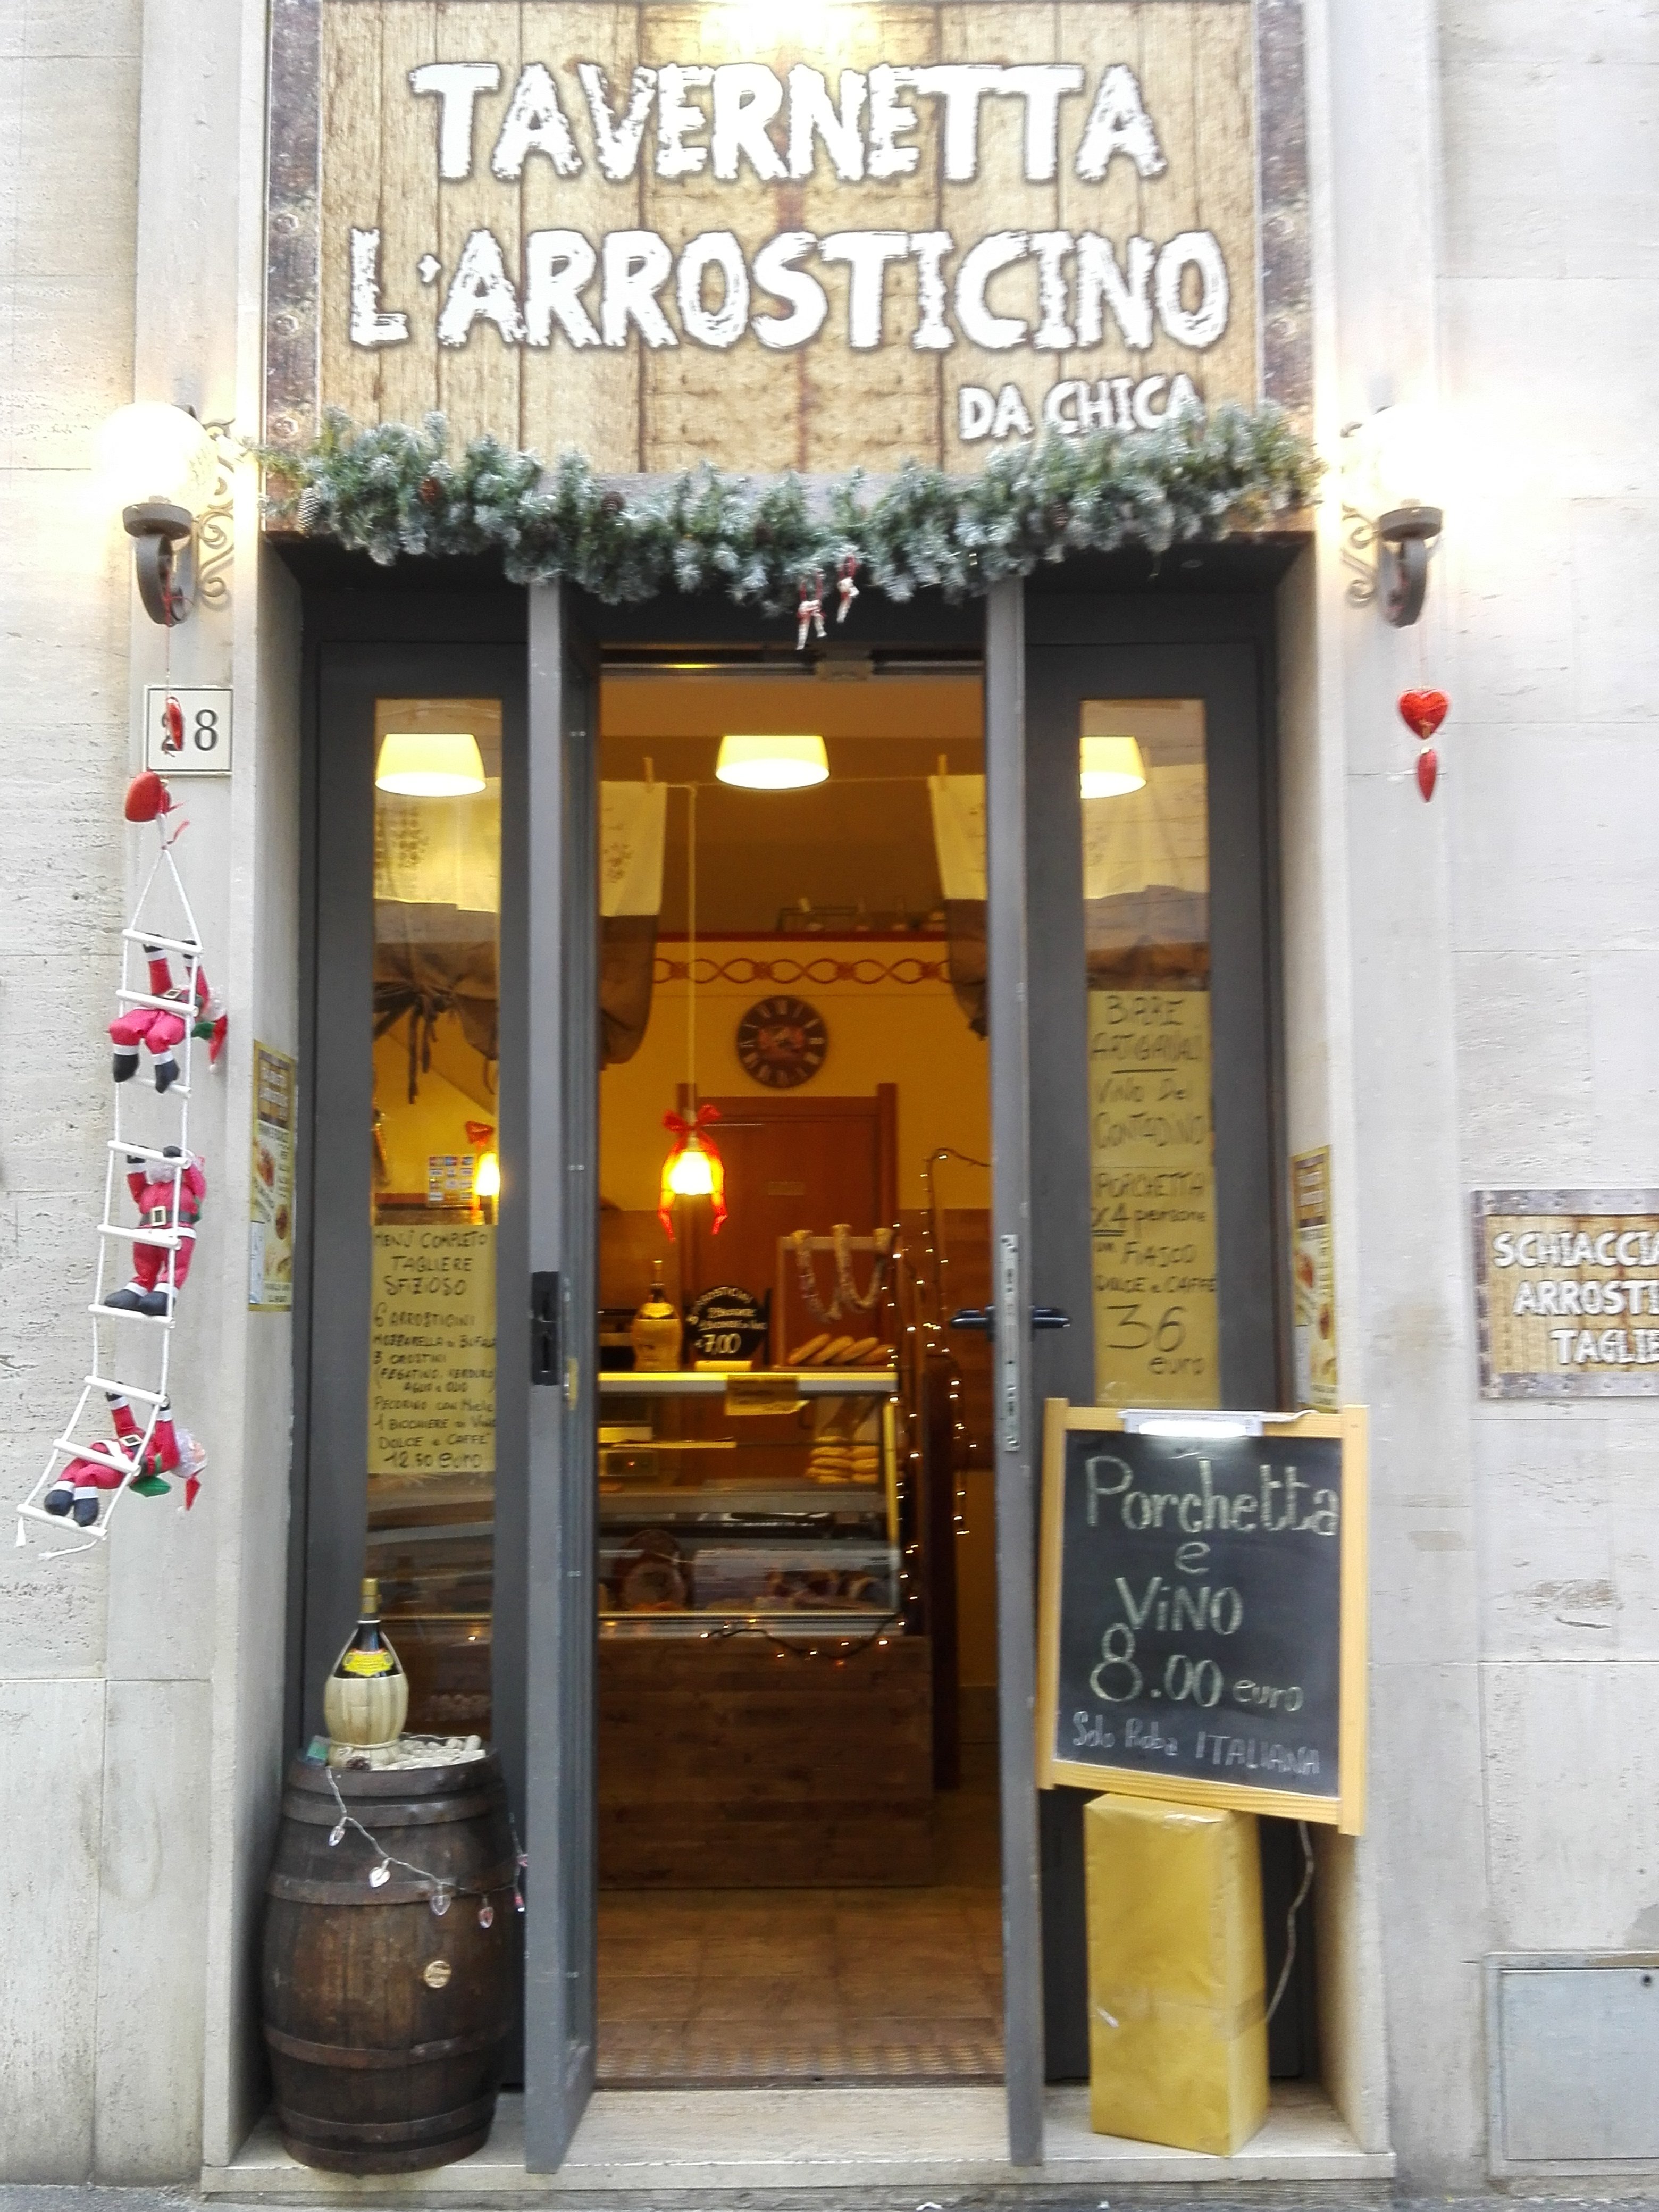 Tavernetta L' Arrosticino Da Chica, Livorno